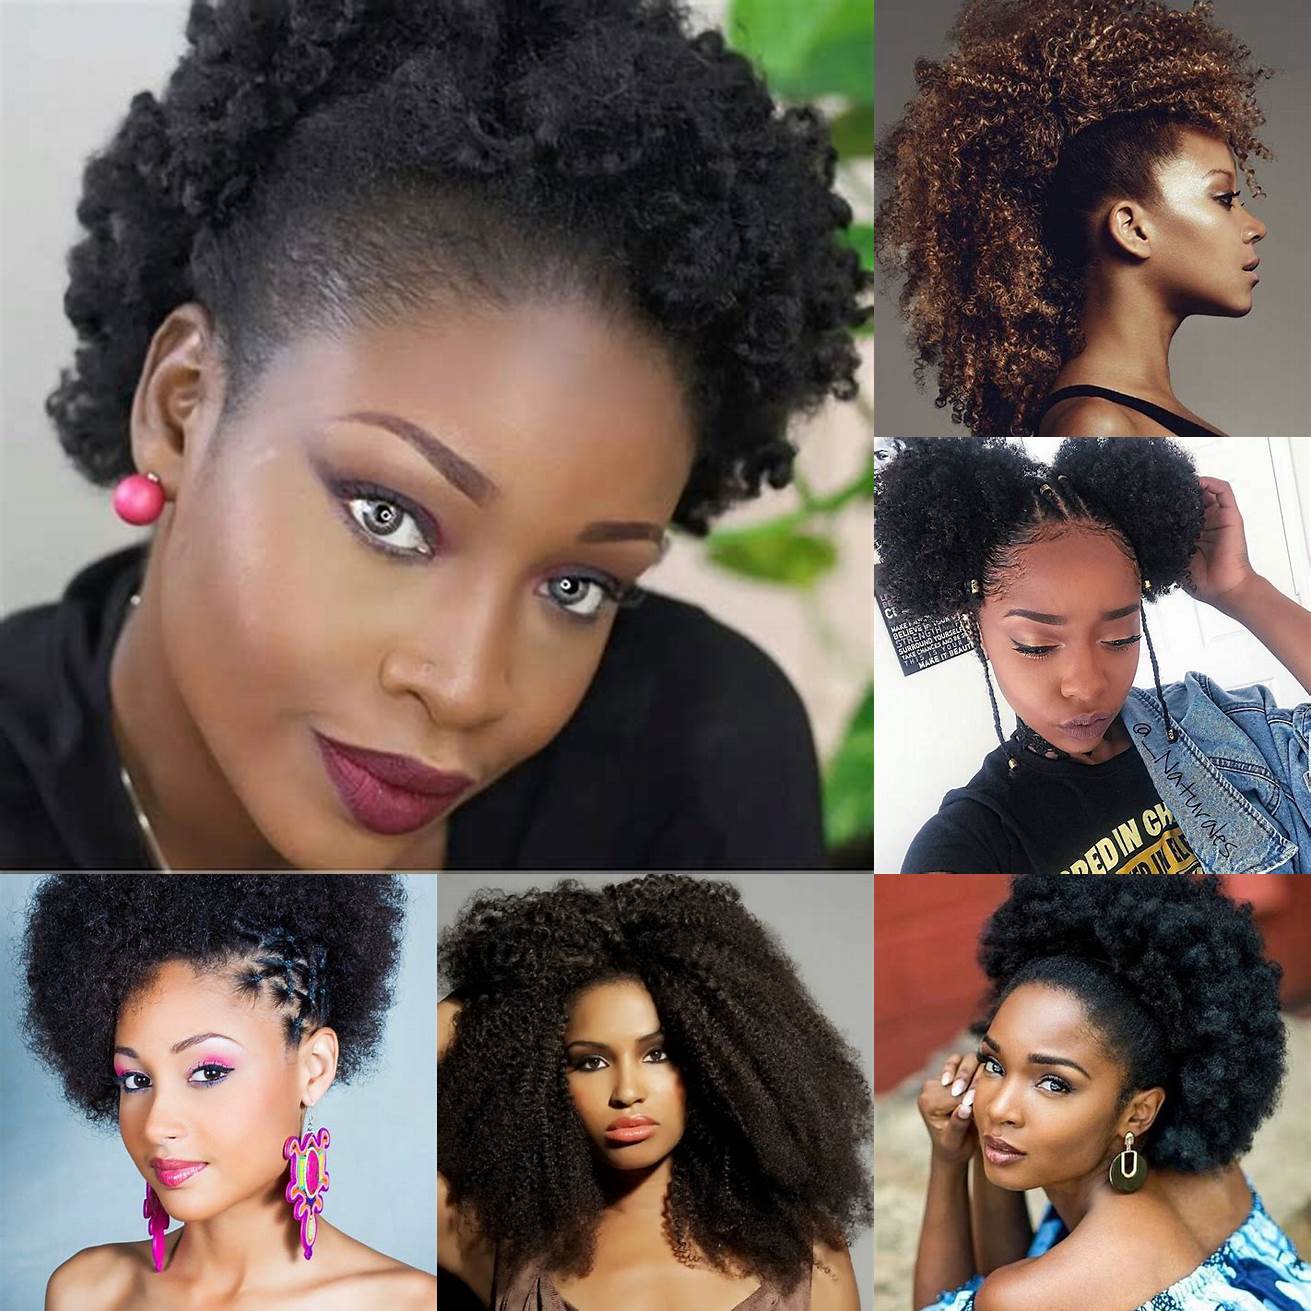 Afro Lafro est une coiffure emblématique des cheveux afro Elle consiste à laisser les cheveux pousser naturellement sans les lisser ni les défriser Cette coiffure convient aux femmes qui veulent affirmer leur identité et leur beauté naturelle